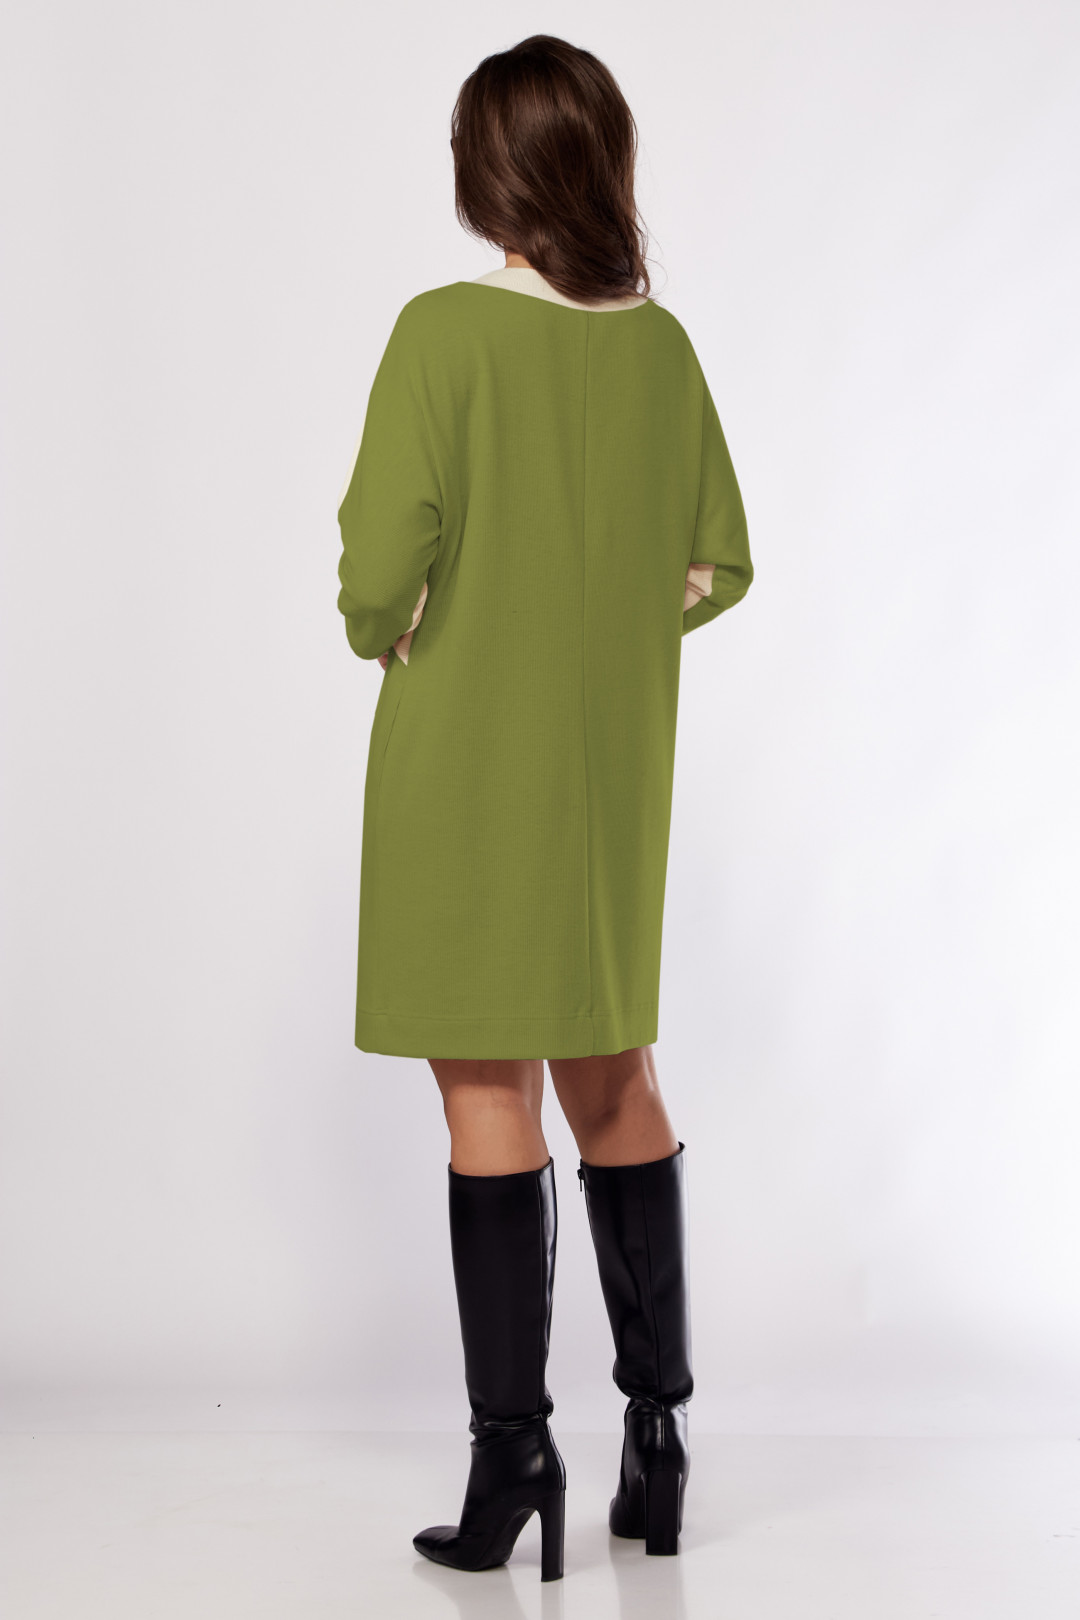 Платье Карина Делюкс М-1161 молочный, зеленый